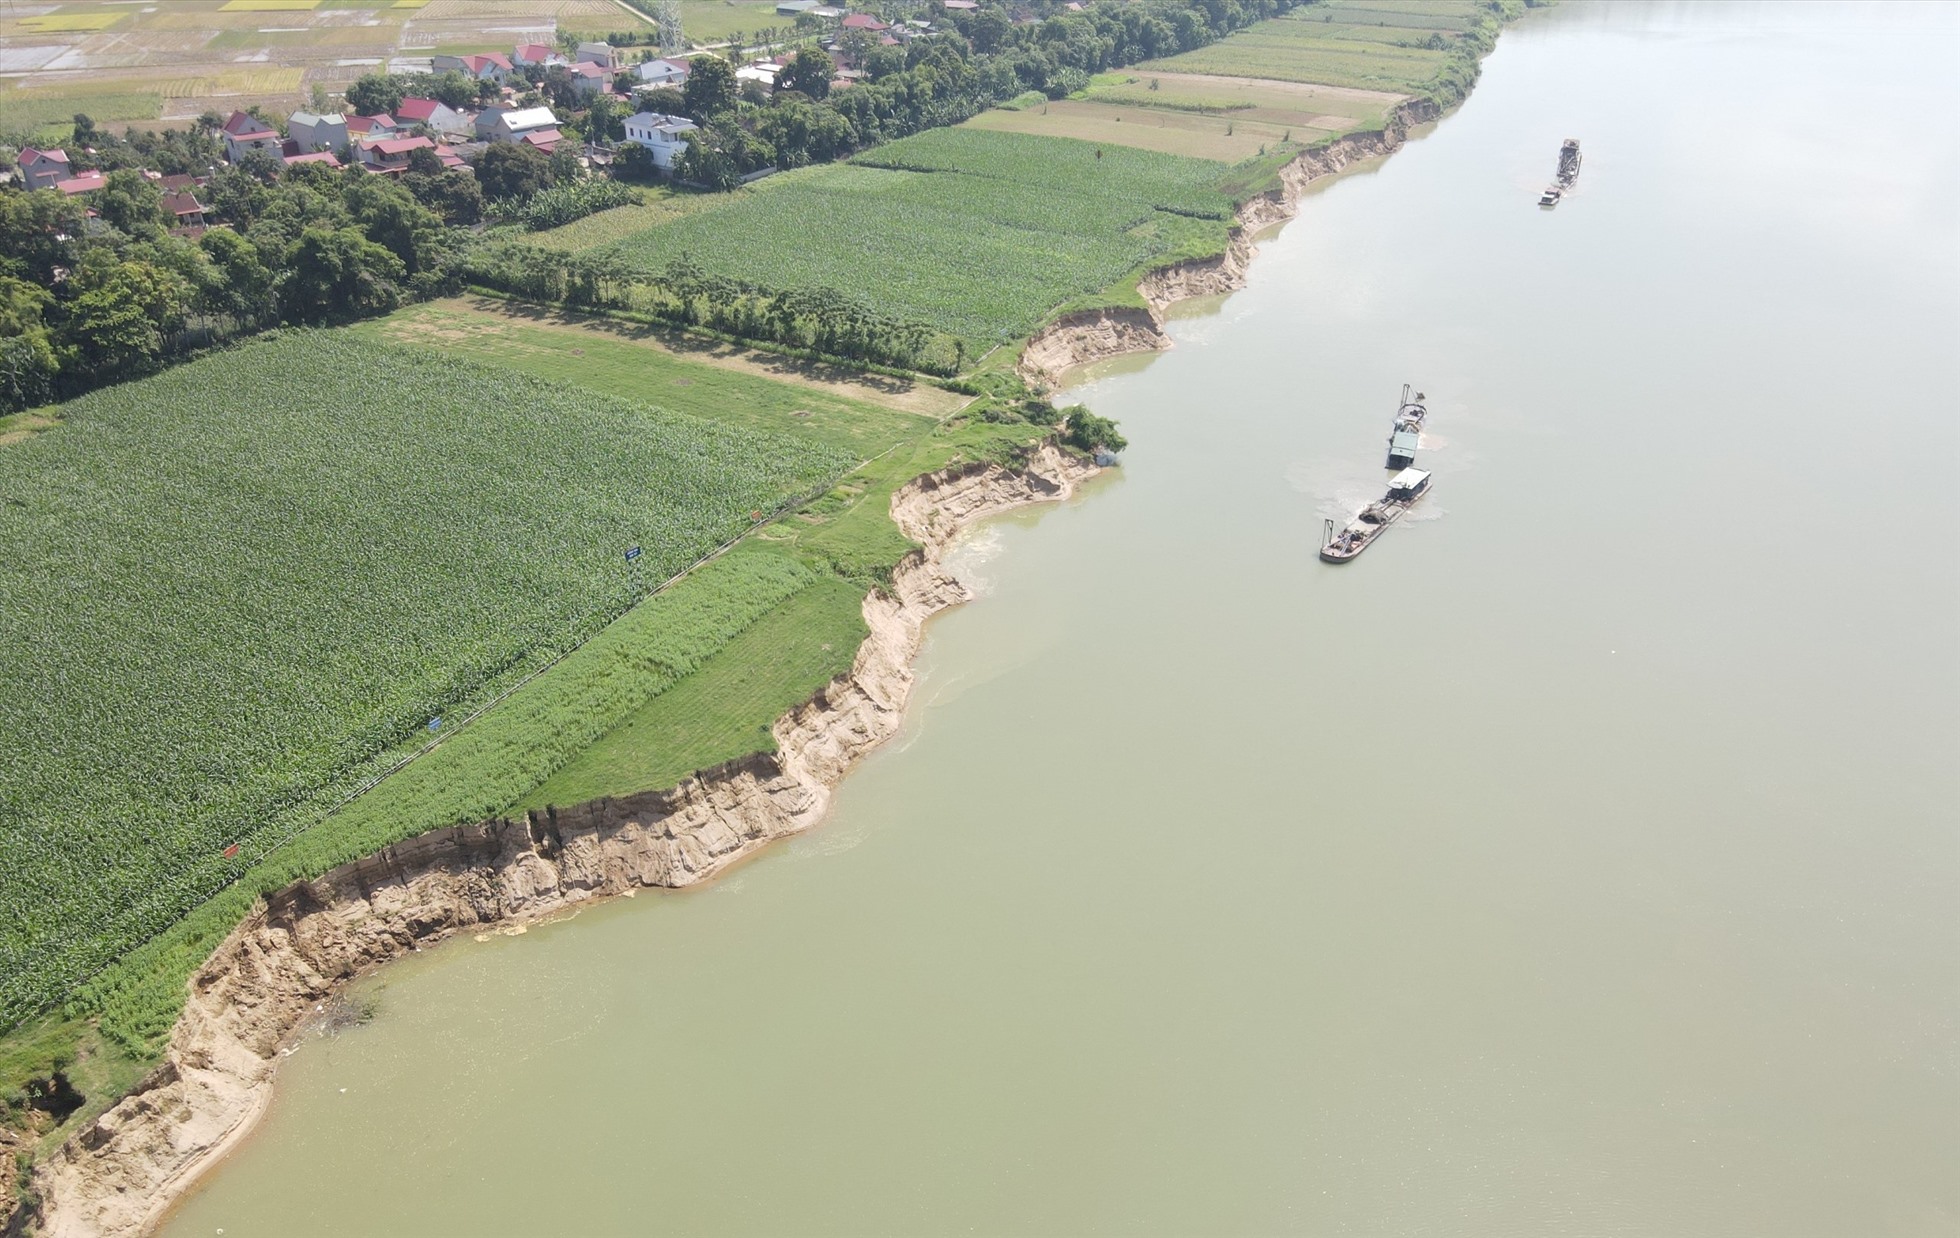 Tình trạng sạt lở bờ sông Mã khá nghiêm trọng, tại xã Vĩnh Hòa, huyện Vĩnh Lộc, tỉnh Thanh Hóa. Ảnh: Minh Hoàng